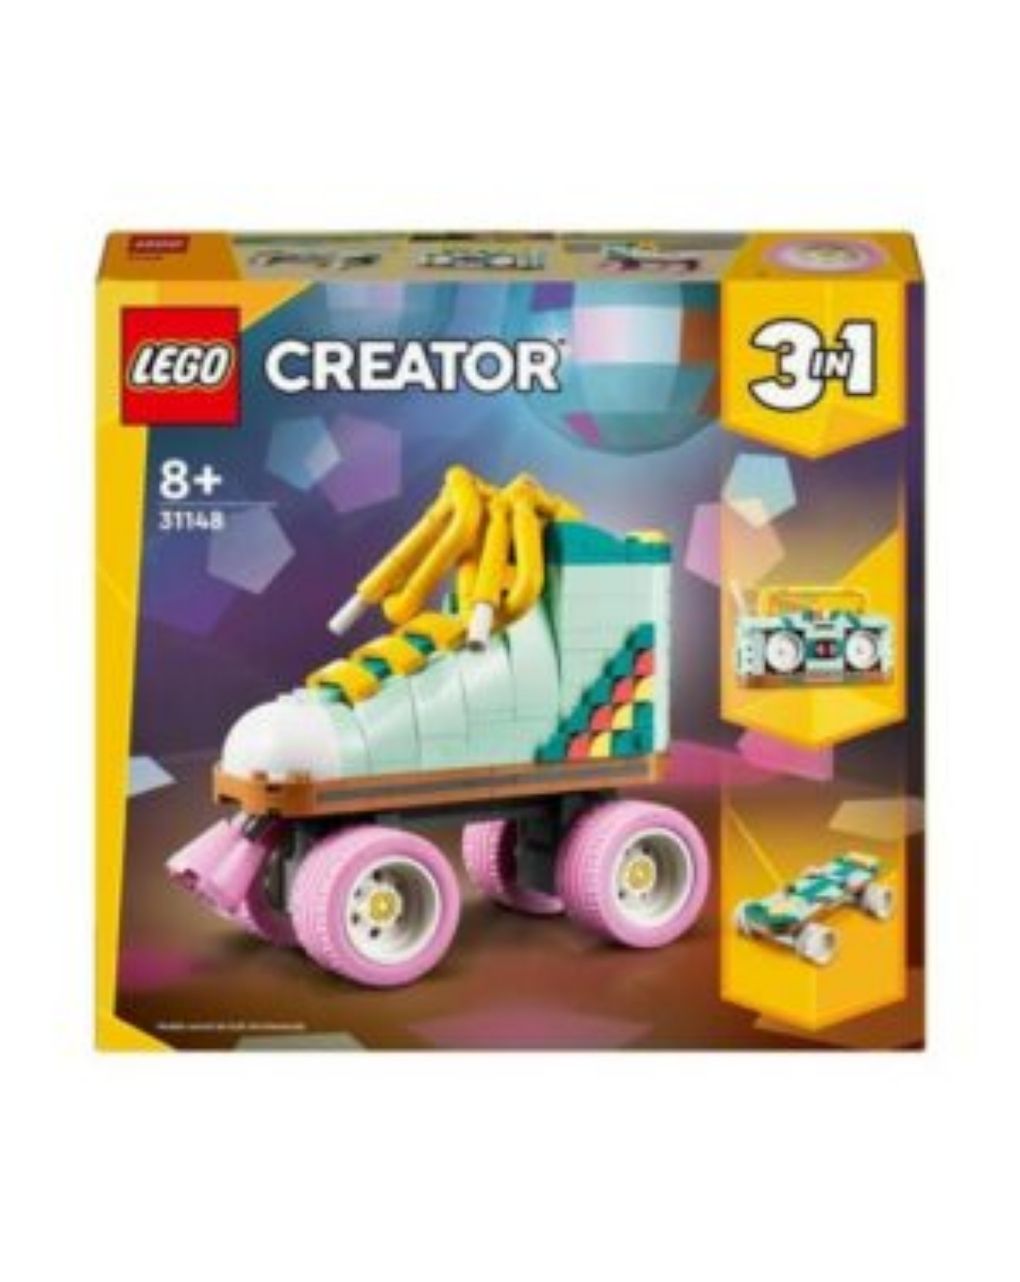 Lego creator retro roller skate για 8+ ετών 31148